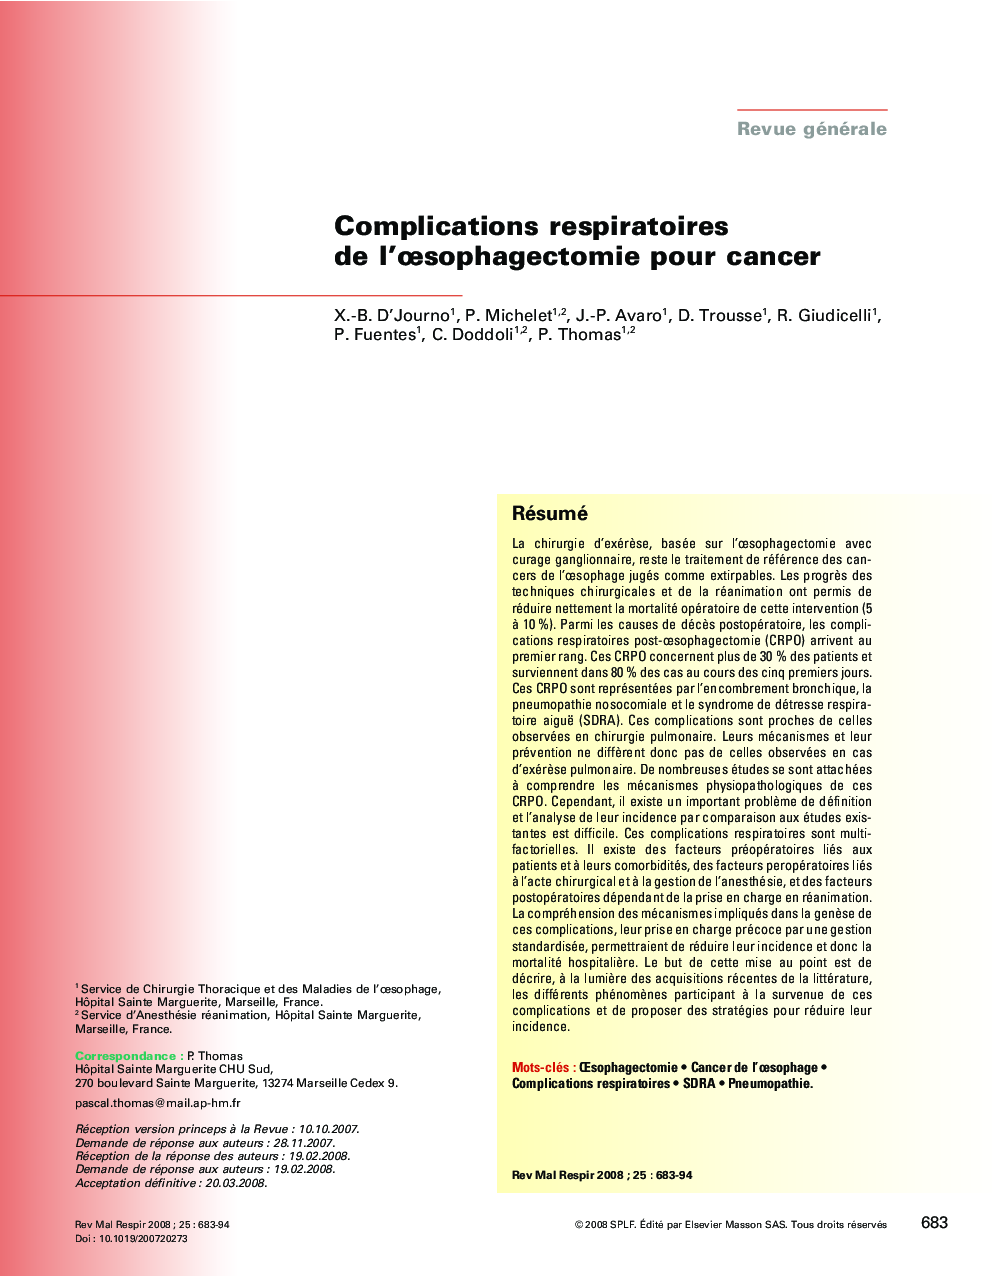 Complications respiratoires de l'Åsophagectomie pour cancer